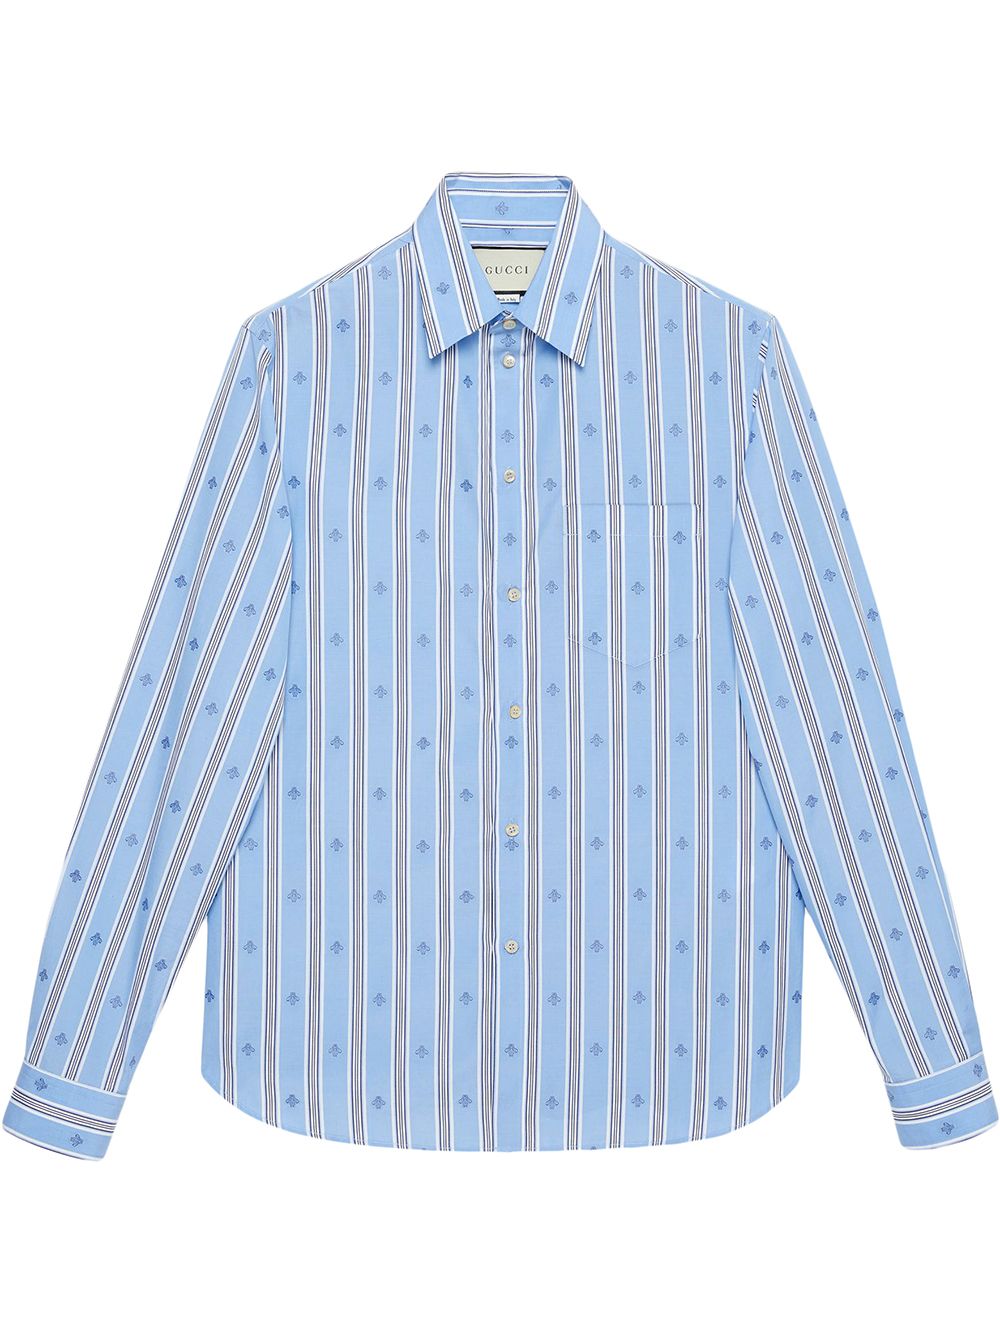 фото Gucci рубашка из ткани филькупе в полоску